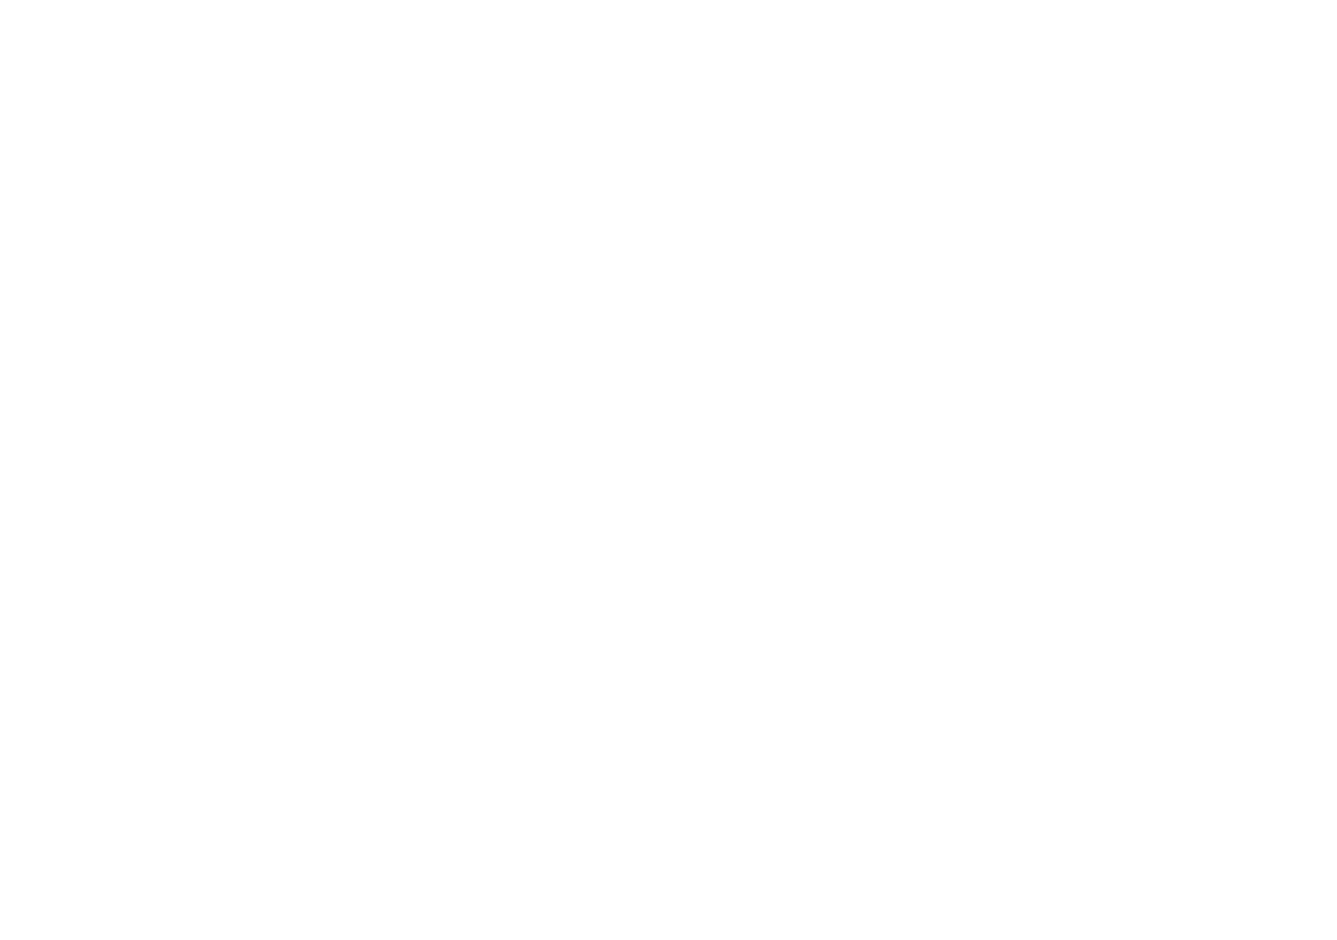 Михаил Петрович Троянский (справа) с Борисом Александровичем Курочкиным, актером Уржумского колхозного театра, и костюмером. [1935–1937]